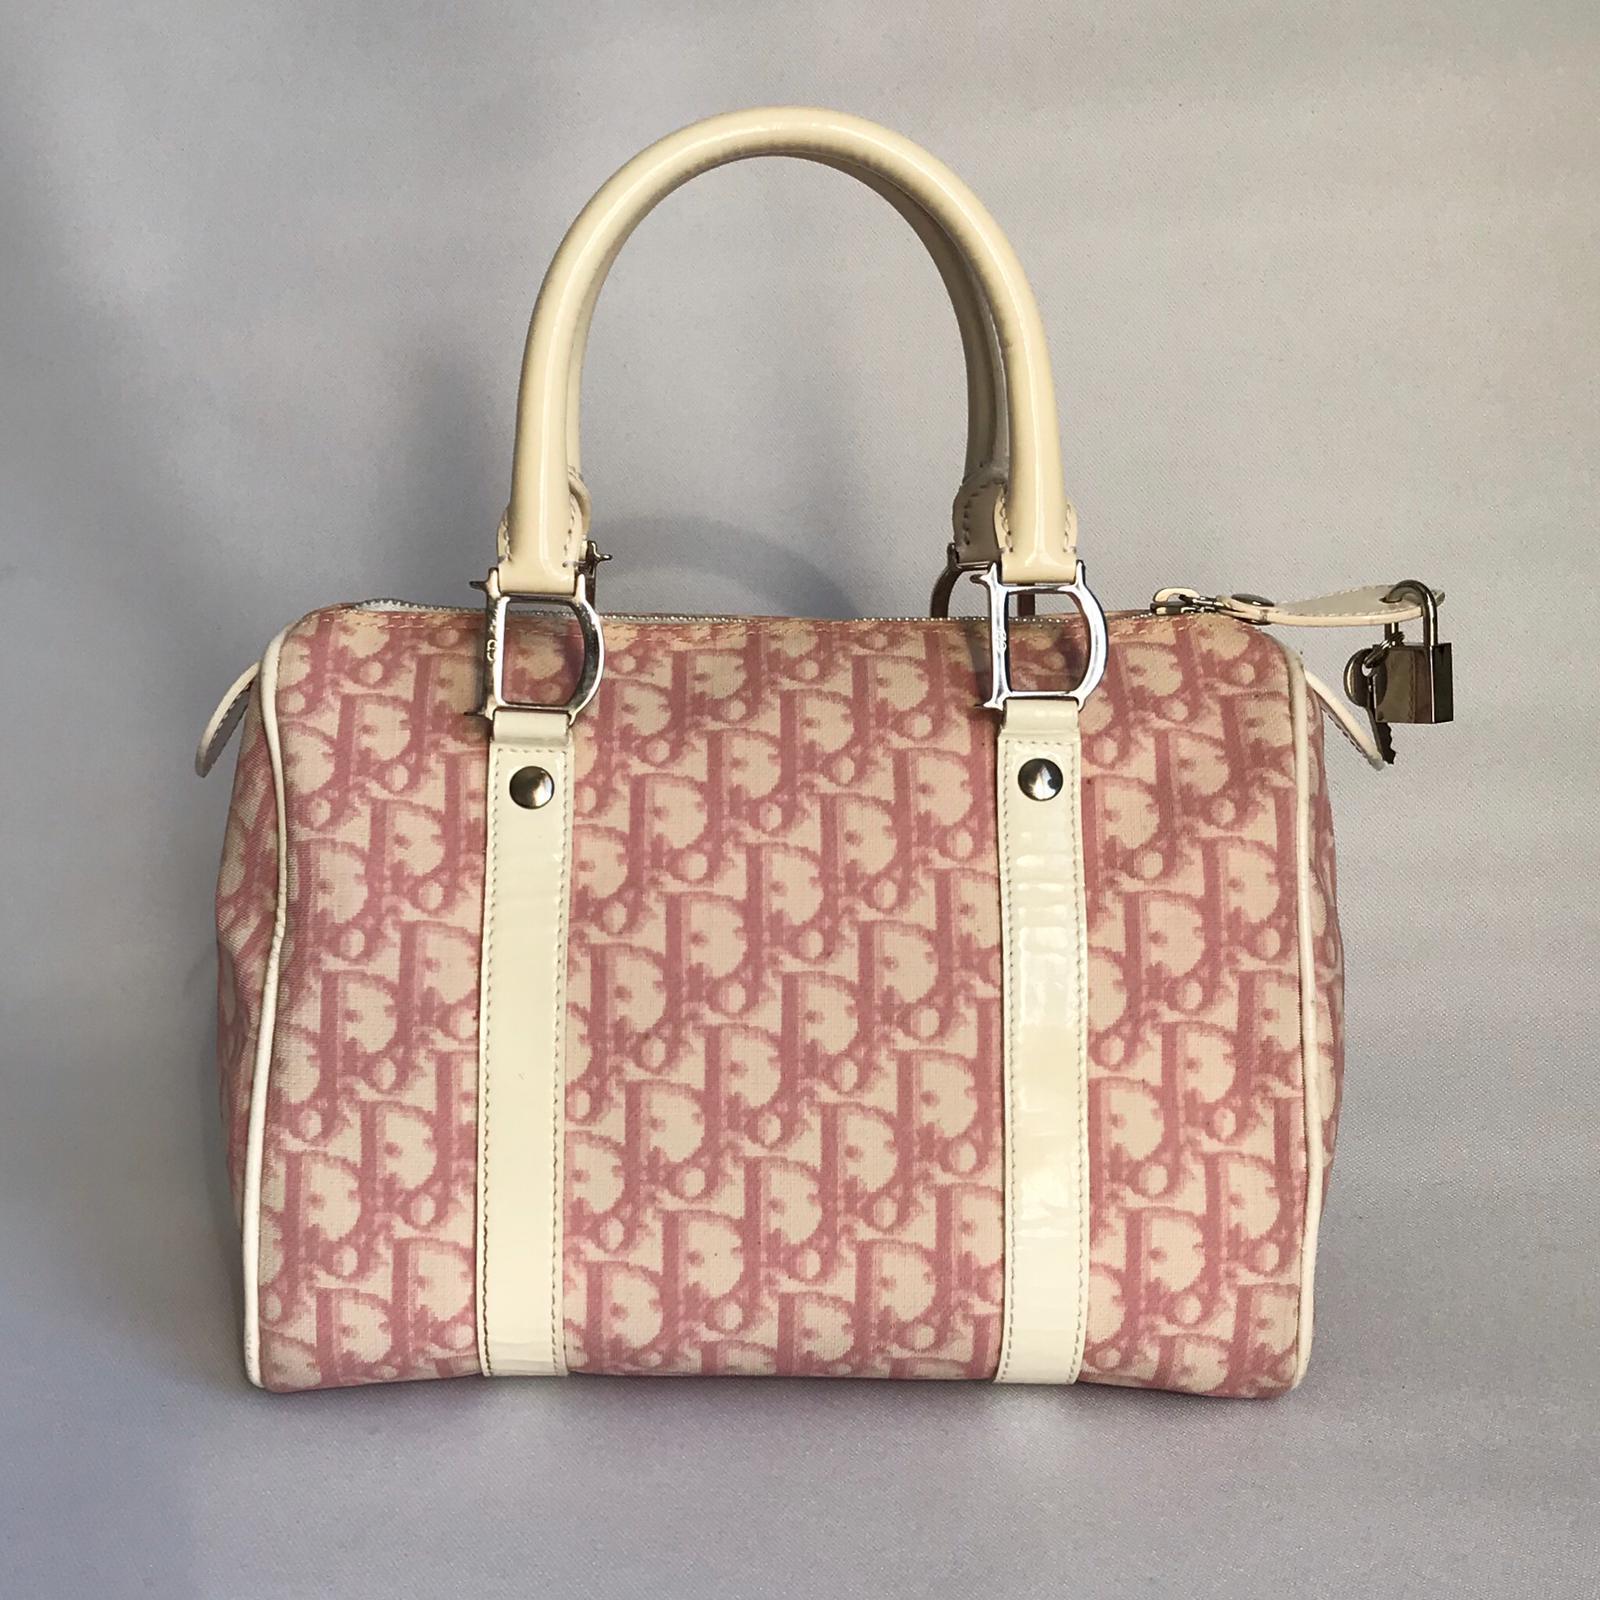 Inspiriert von der klassischen Dior-Boston-Tasche, aber neu interpretiert mit mädchenhaften